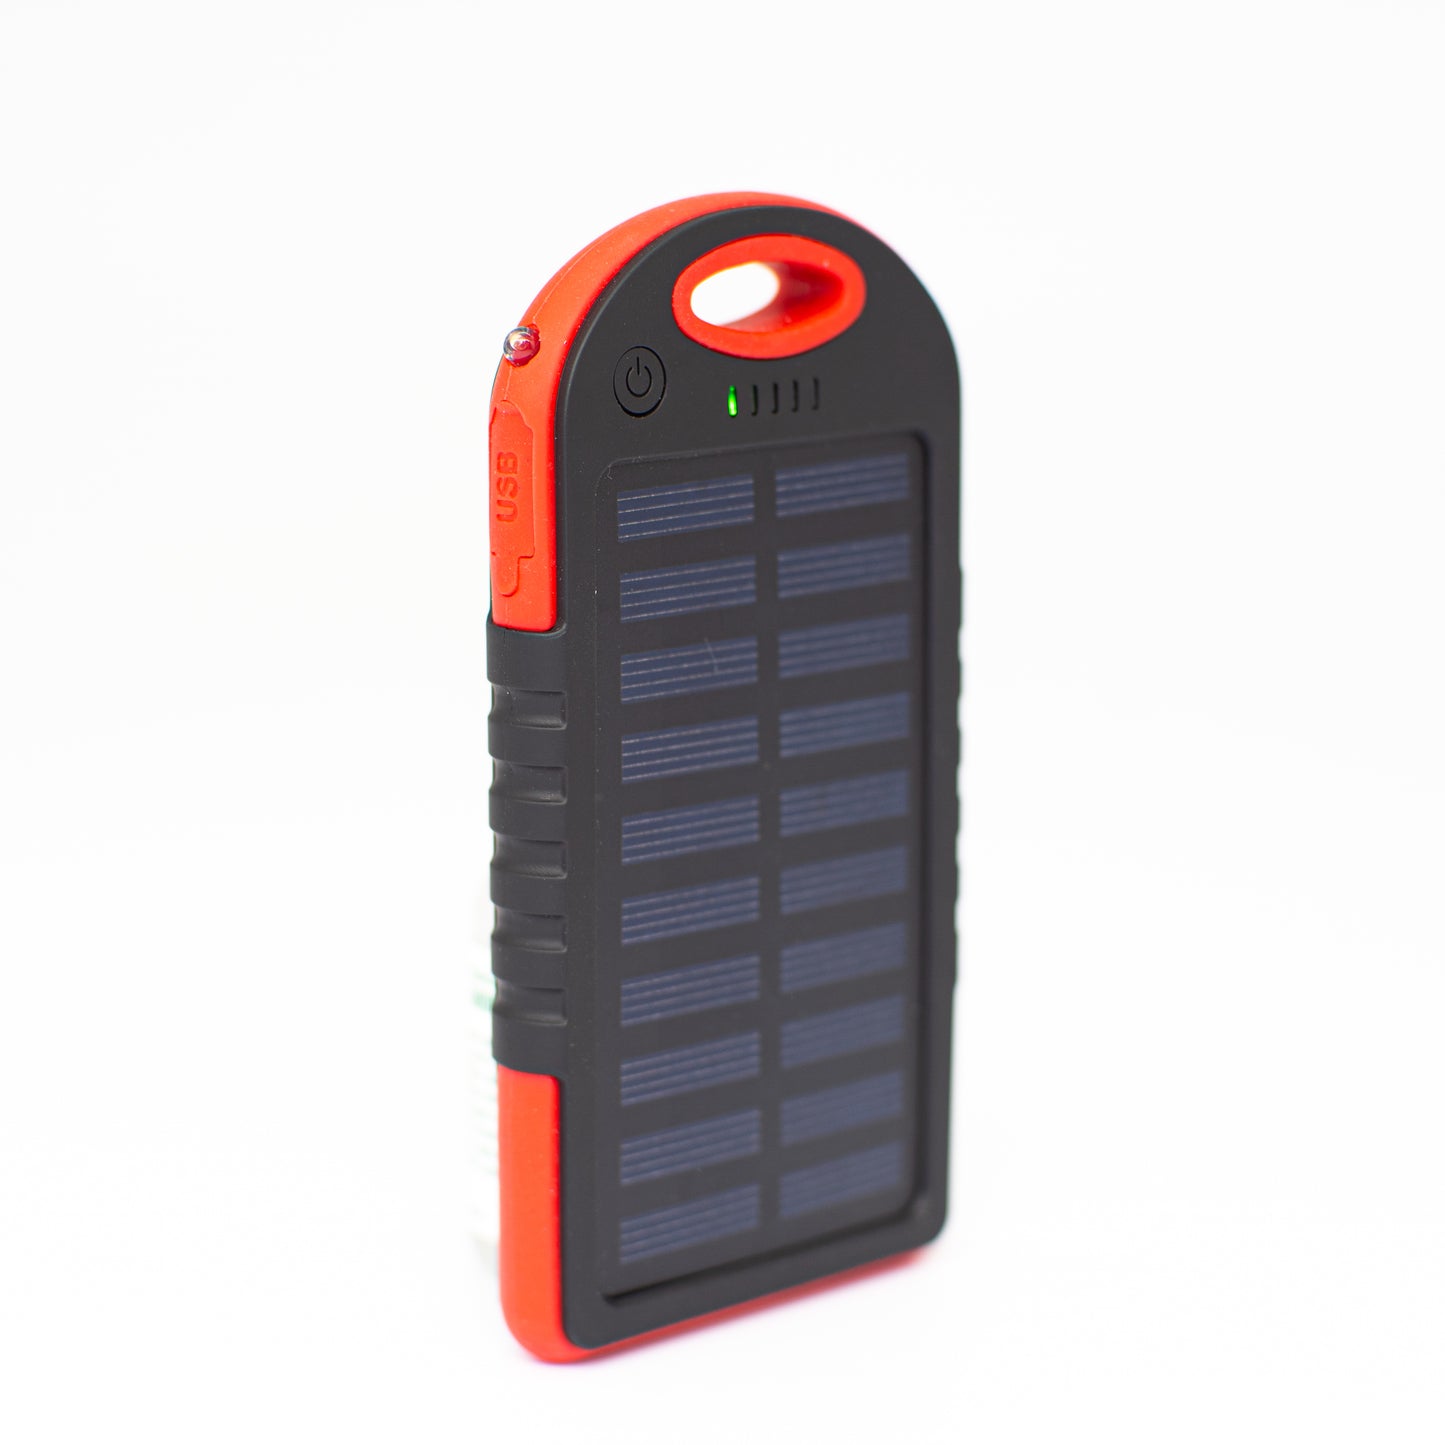 Batterie externe solaire Panneau solaire haut de gamme avec batterie externe, lampe et 2 sorties USB - charge directement avec le soleil pour une alimentation de secours